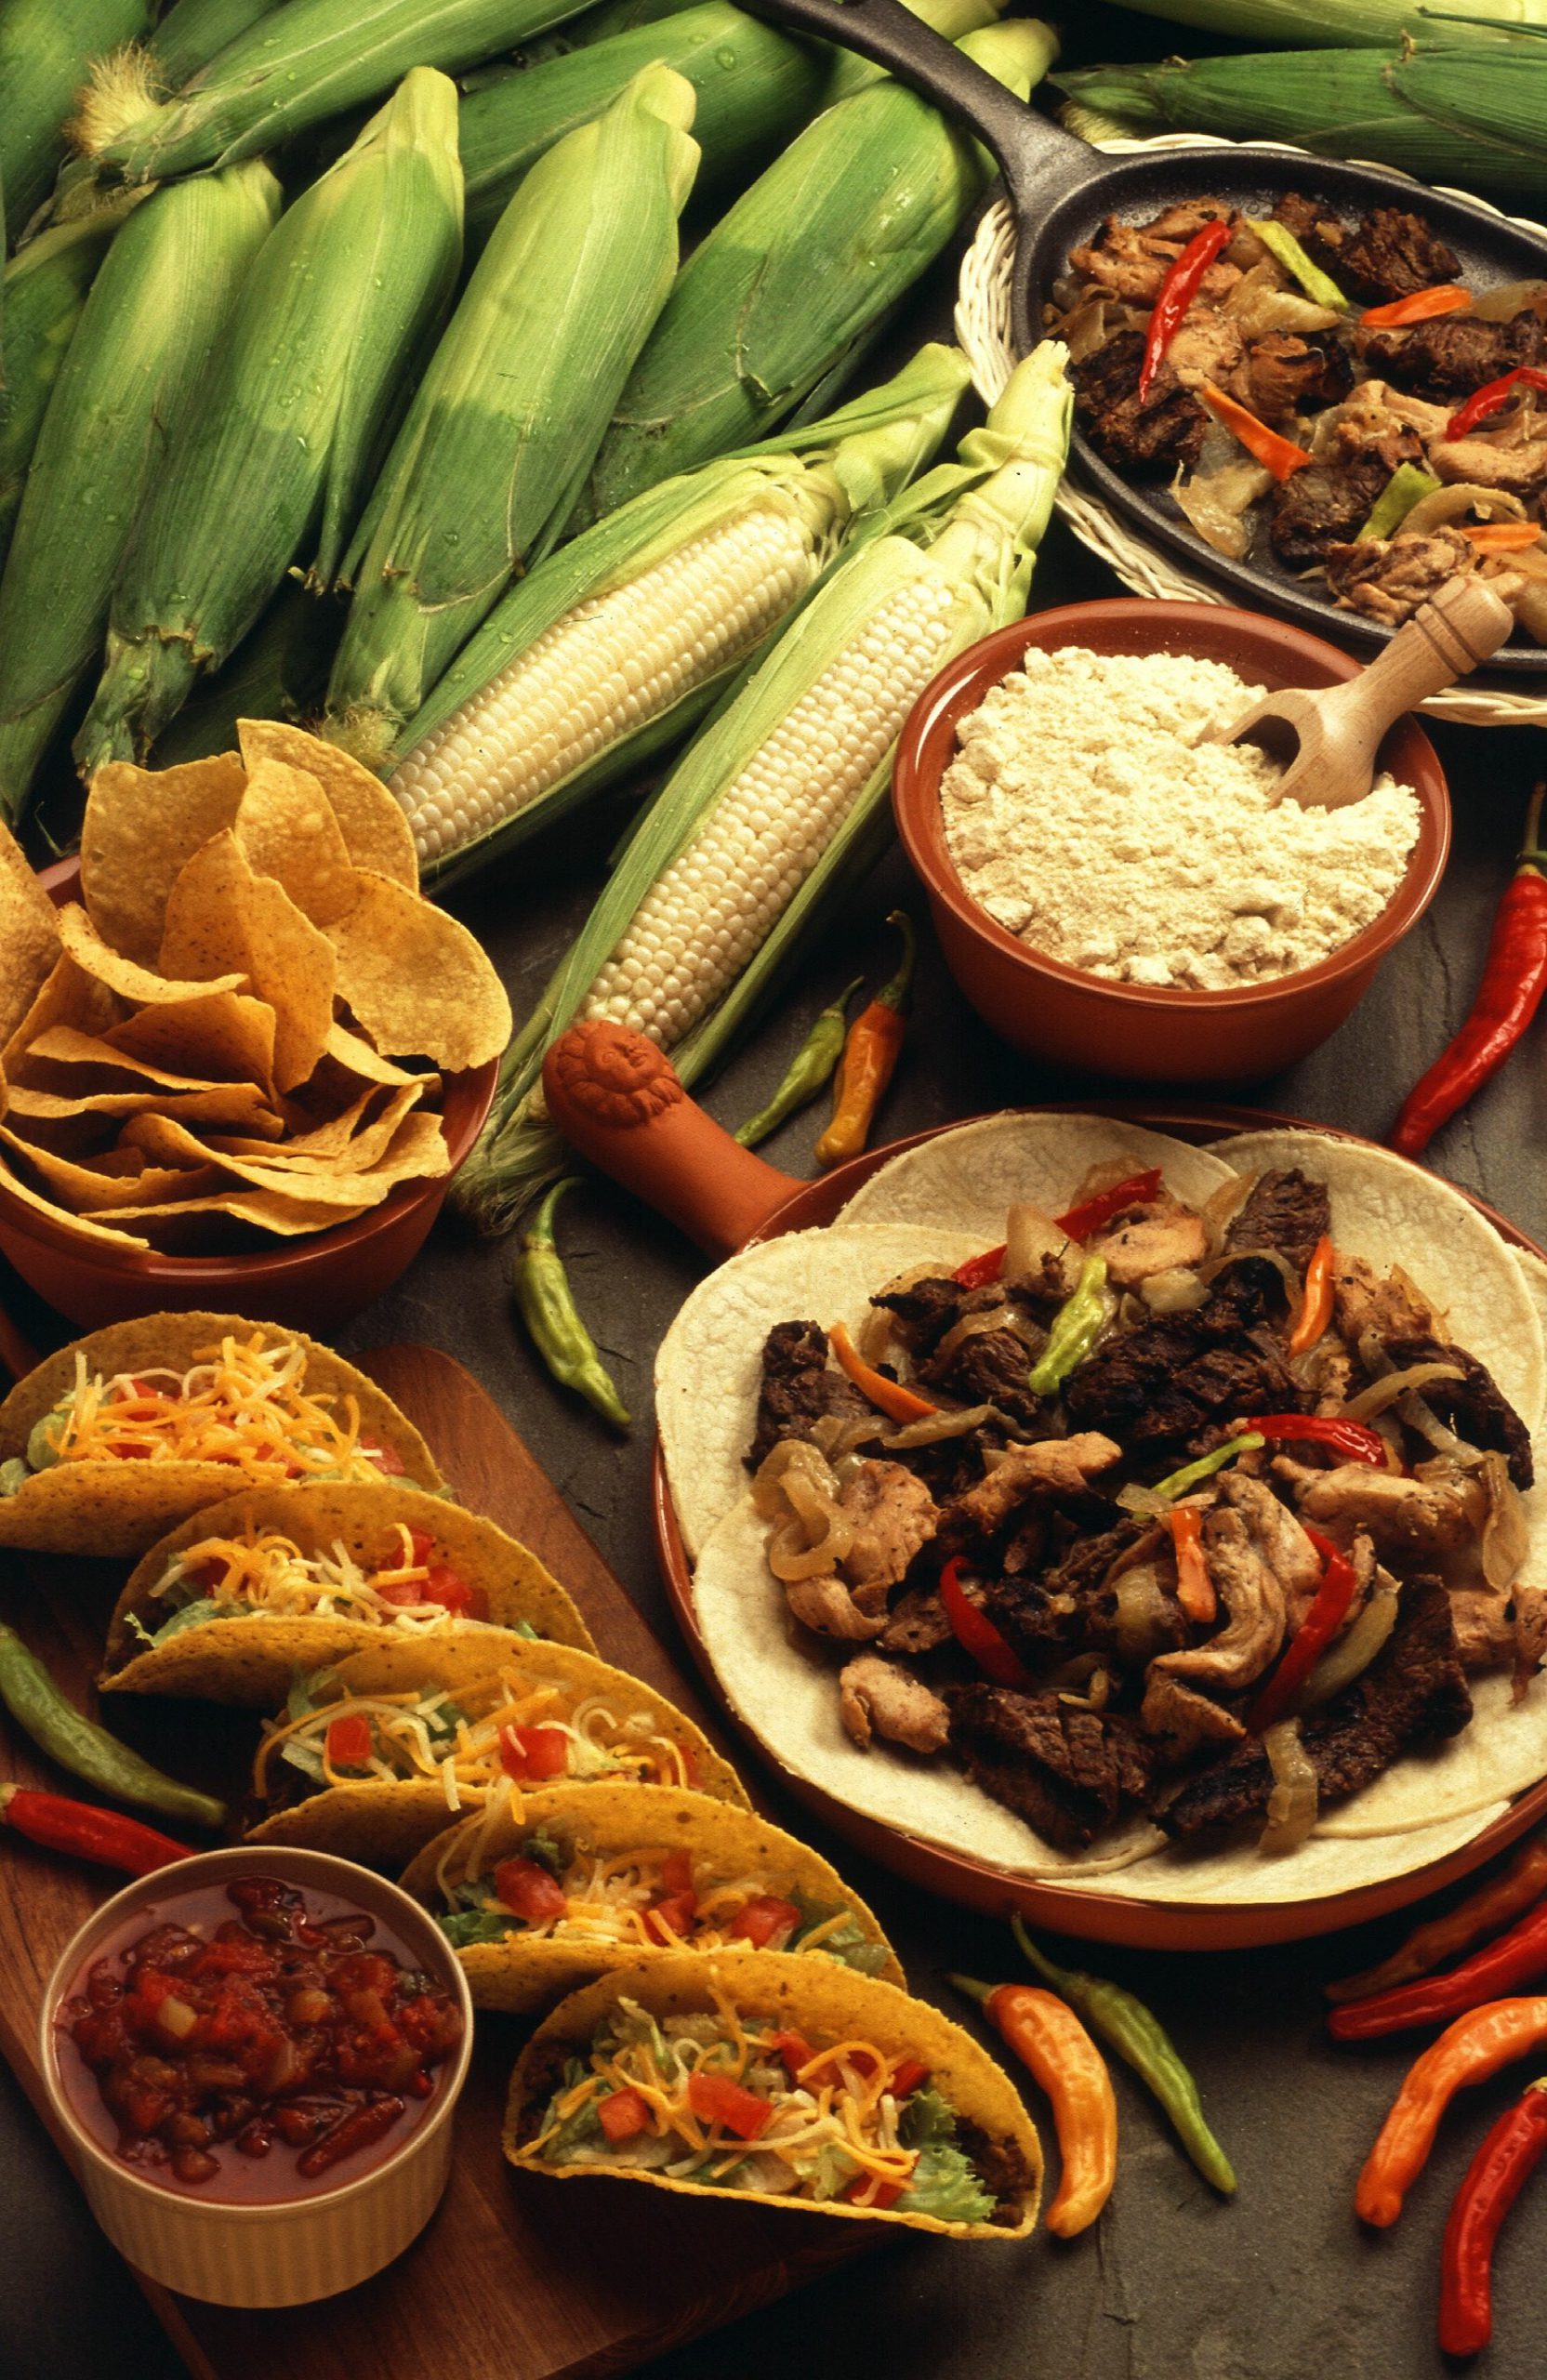 Cocina Mexico